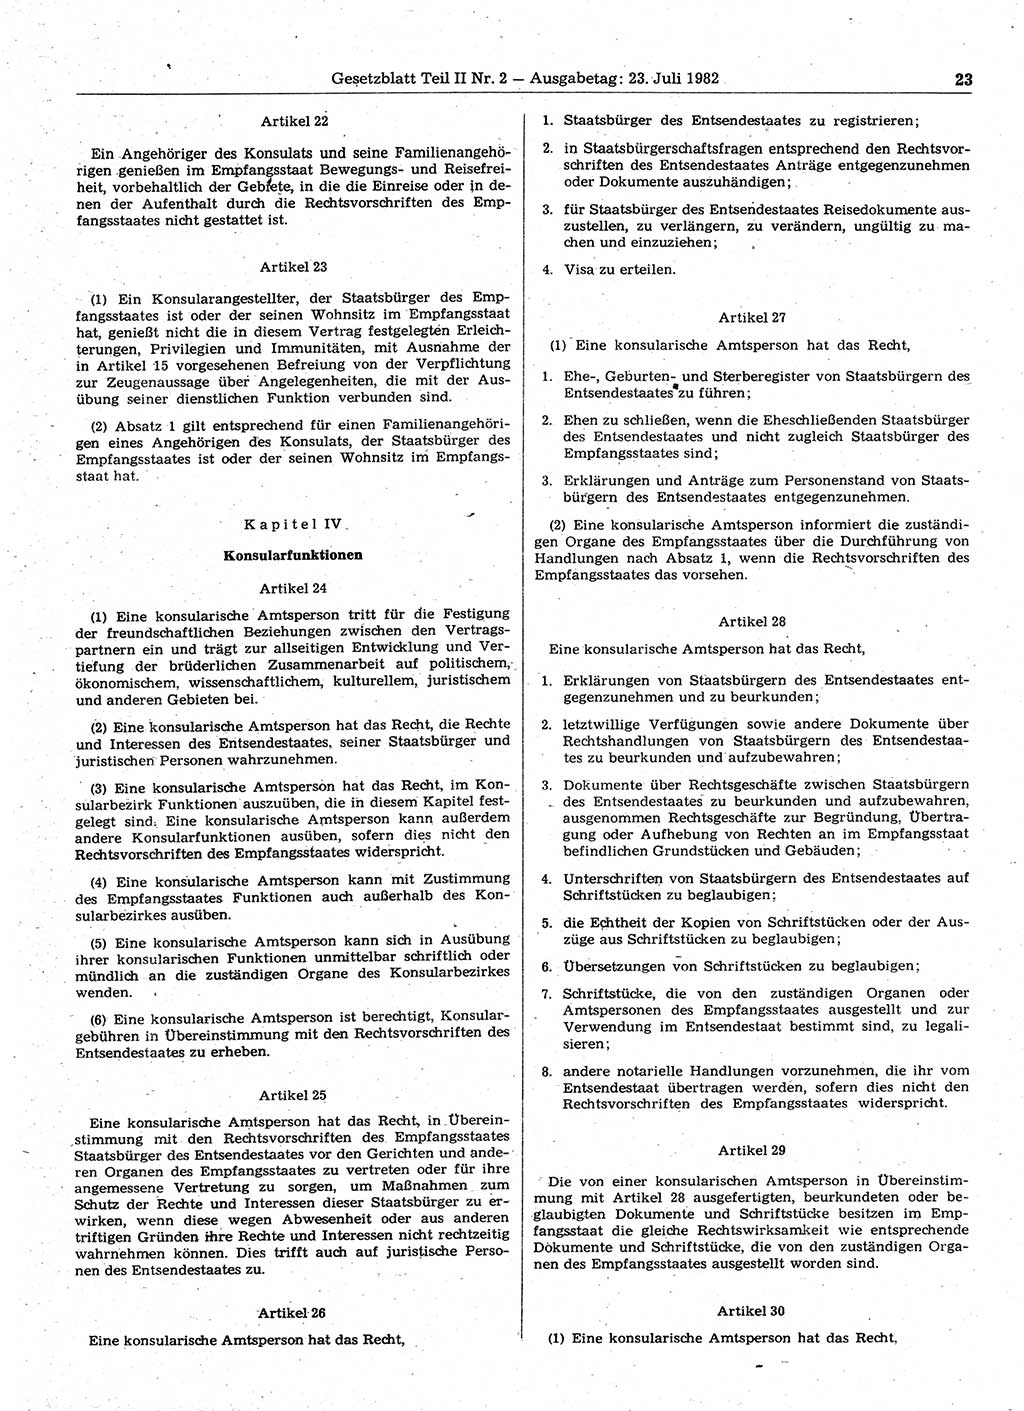 Gesetzblatt (GBl.) der Deutschen Demokratischen Republik (DDR) Teil ⅠⅠ 1982, Seite 23 (GBl. DDR ⅠⅠ 1982, S. 23)